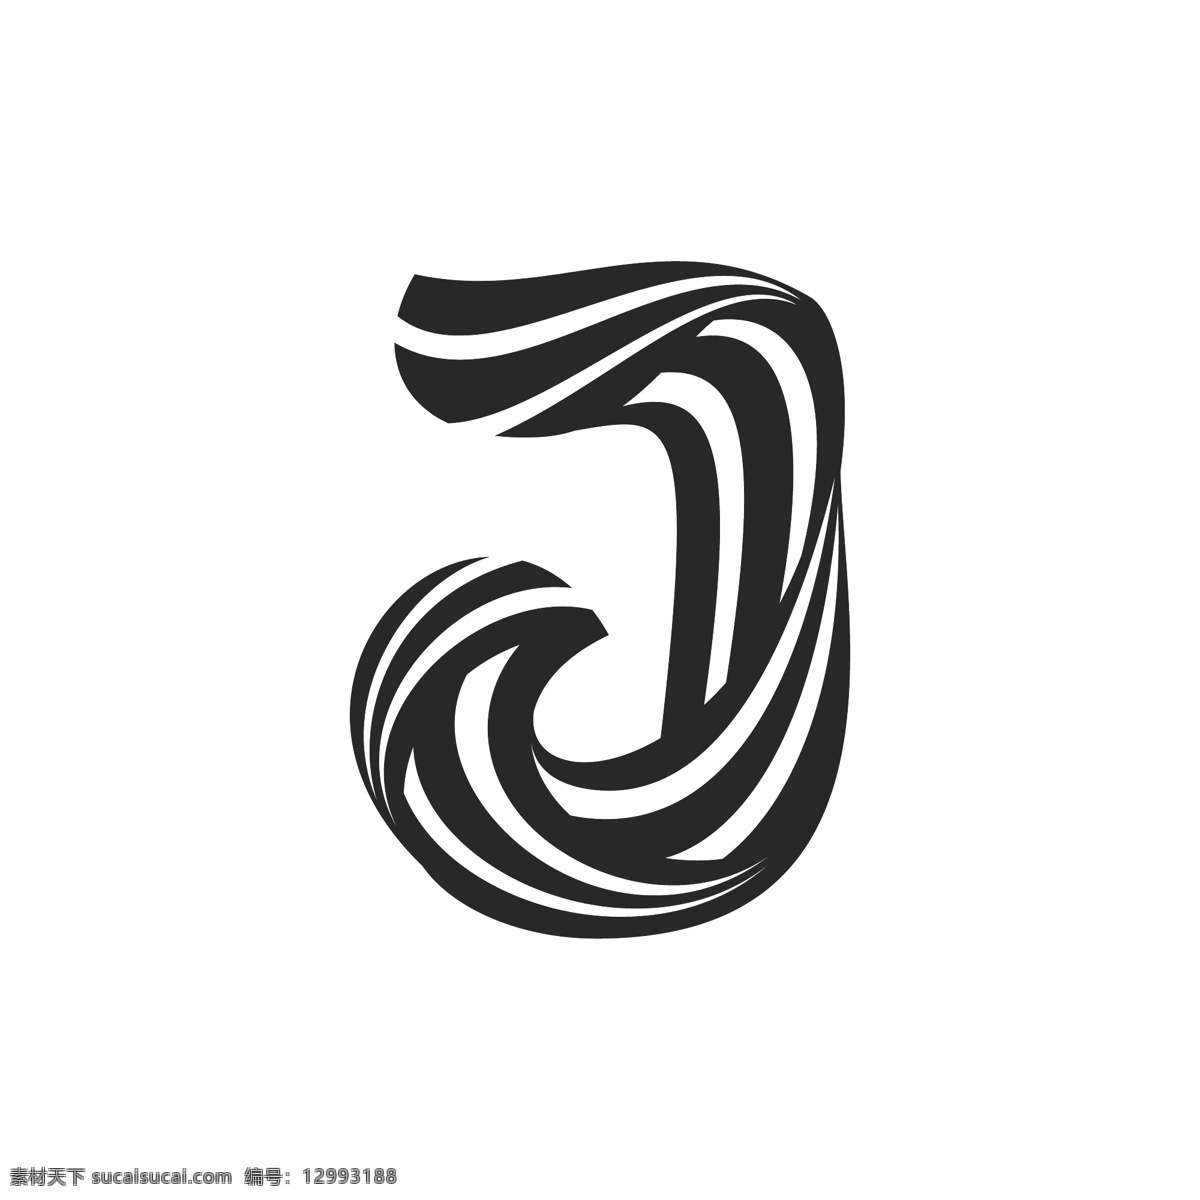 字母 造型 logo 标识 j 科技 标志 创意 广告 珠宝 互联网 科技logo 领域 多用途 公司 简约 企业标识 企业logo 能源